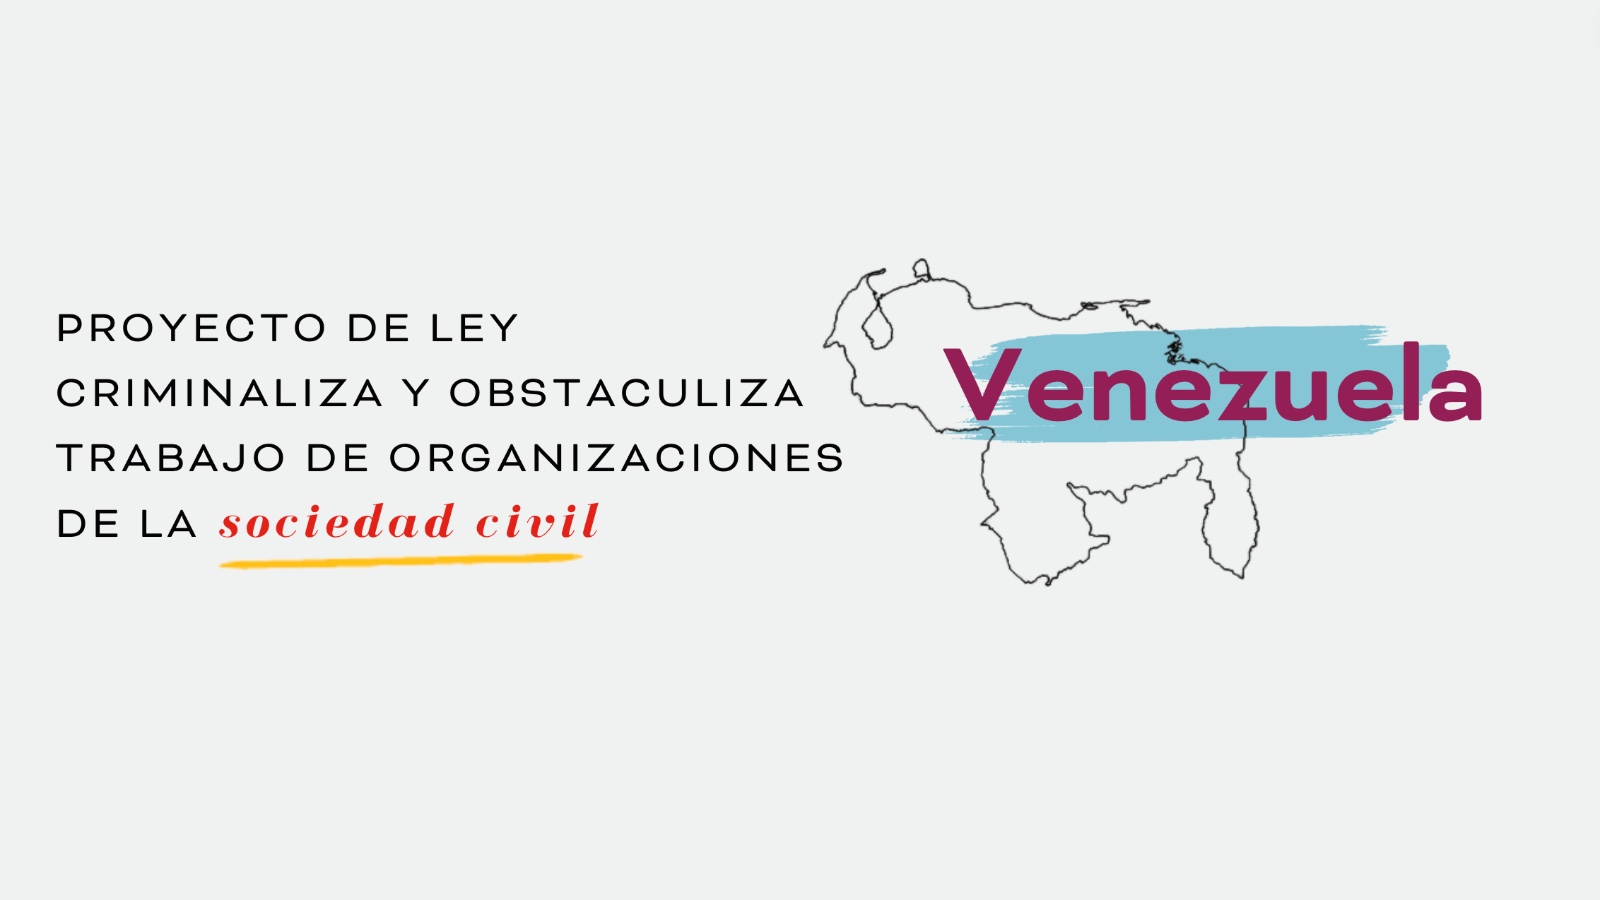 Organizaciones internacionales expresan preocupación por proyecto de ley que criminaliza y obstaculiza trabajo de organizaciones de la sociedad civil en Venezuela